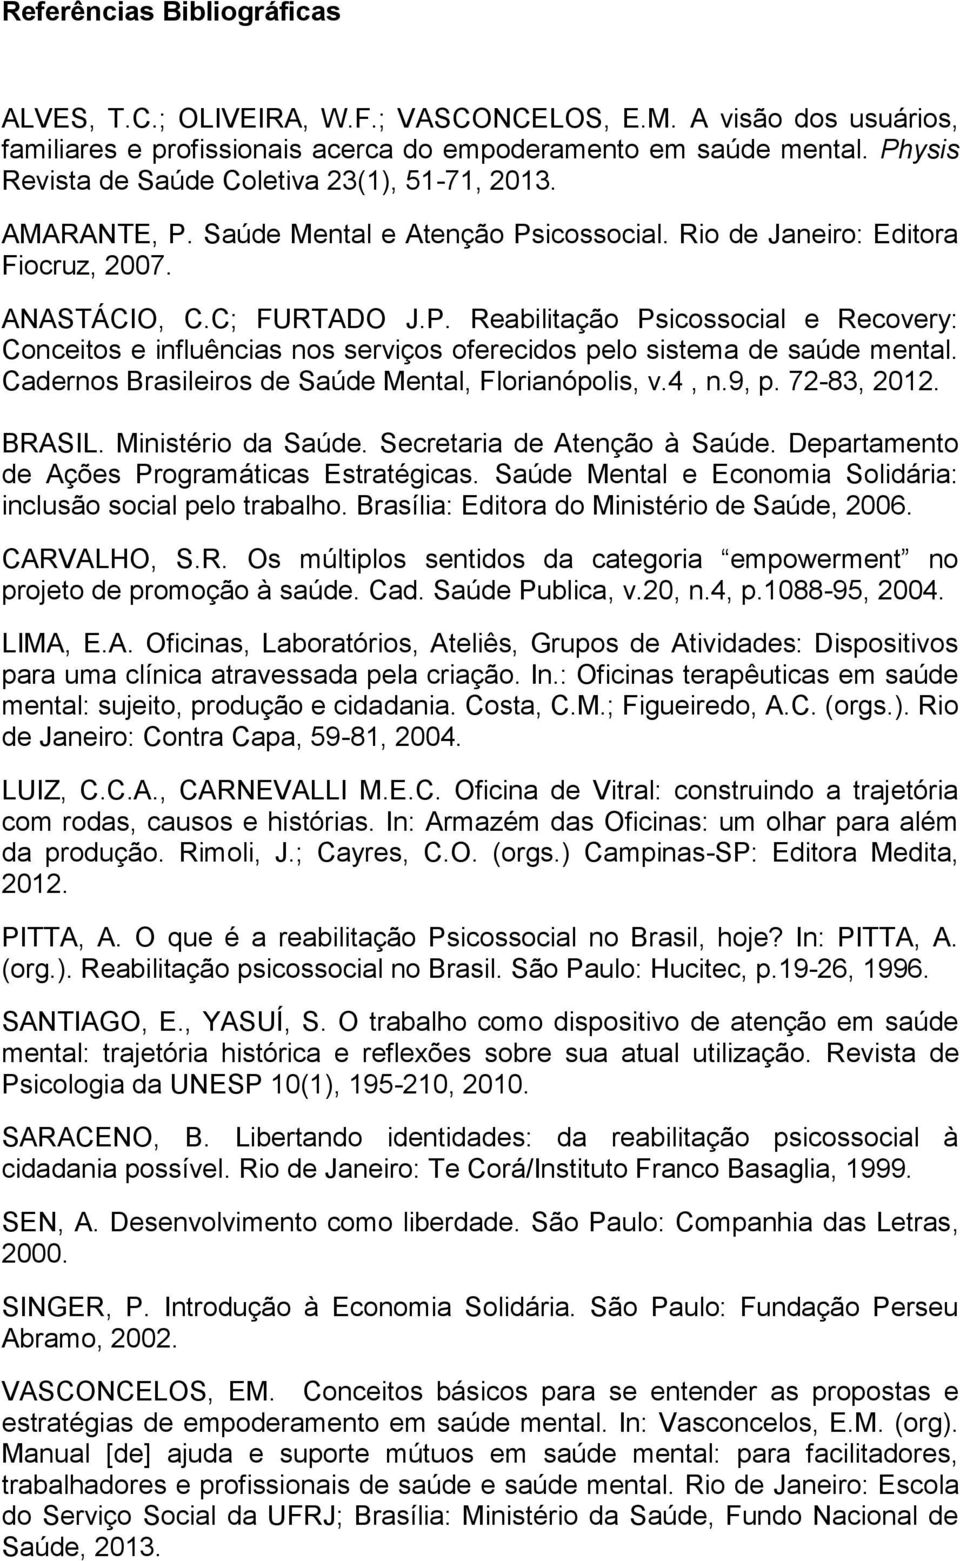 Cadernos Brasileiros de Saúde Mental, Florianópolis, v.4, n.9, p. 72-83, 2012. BRASIL. Ministério da Saúde. Secretaria de Atenção à Saúde. Departamento de Ações Programáticas Estratégicas.